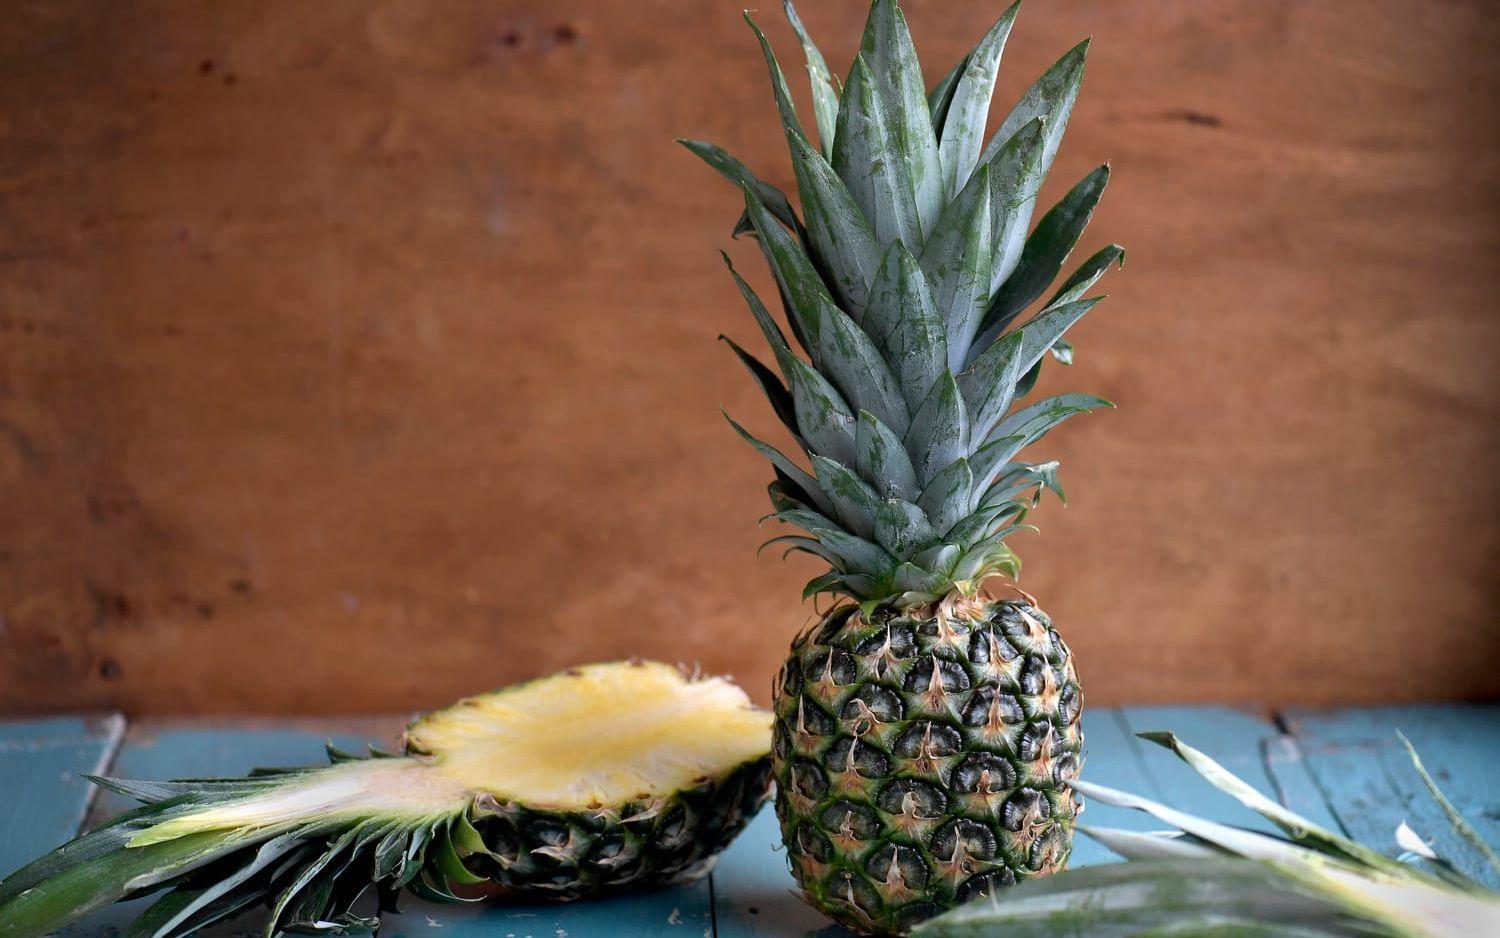 Ananasen påminner om en stor kotte och består egentligen av bär som vuxit samman. Namnet lär betyda ”Den oöverträffade frukten”.